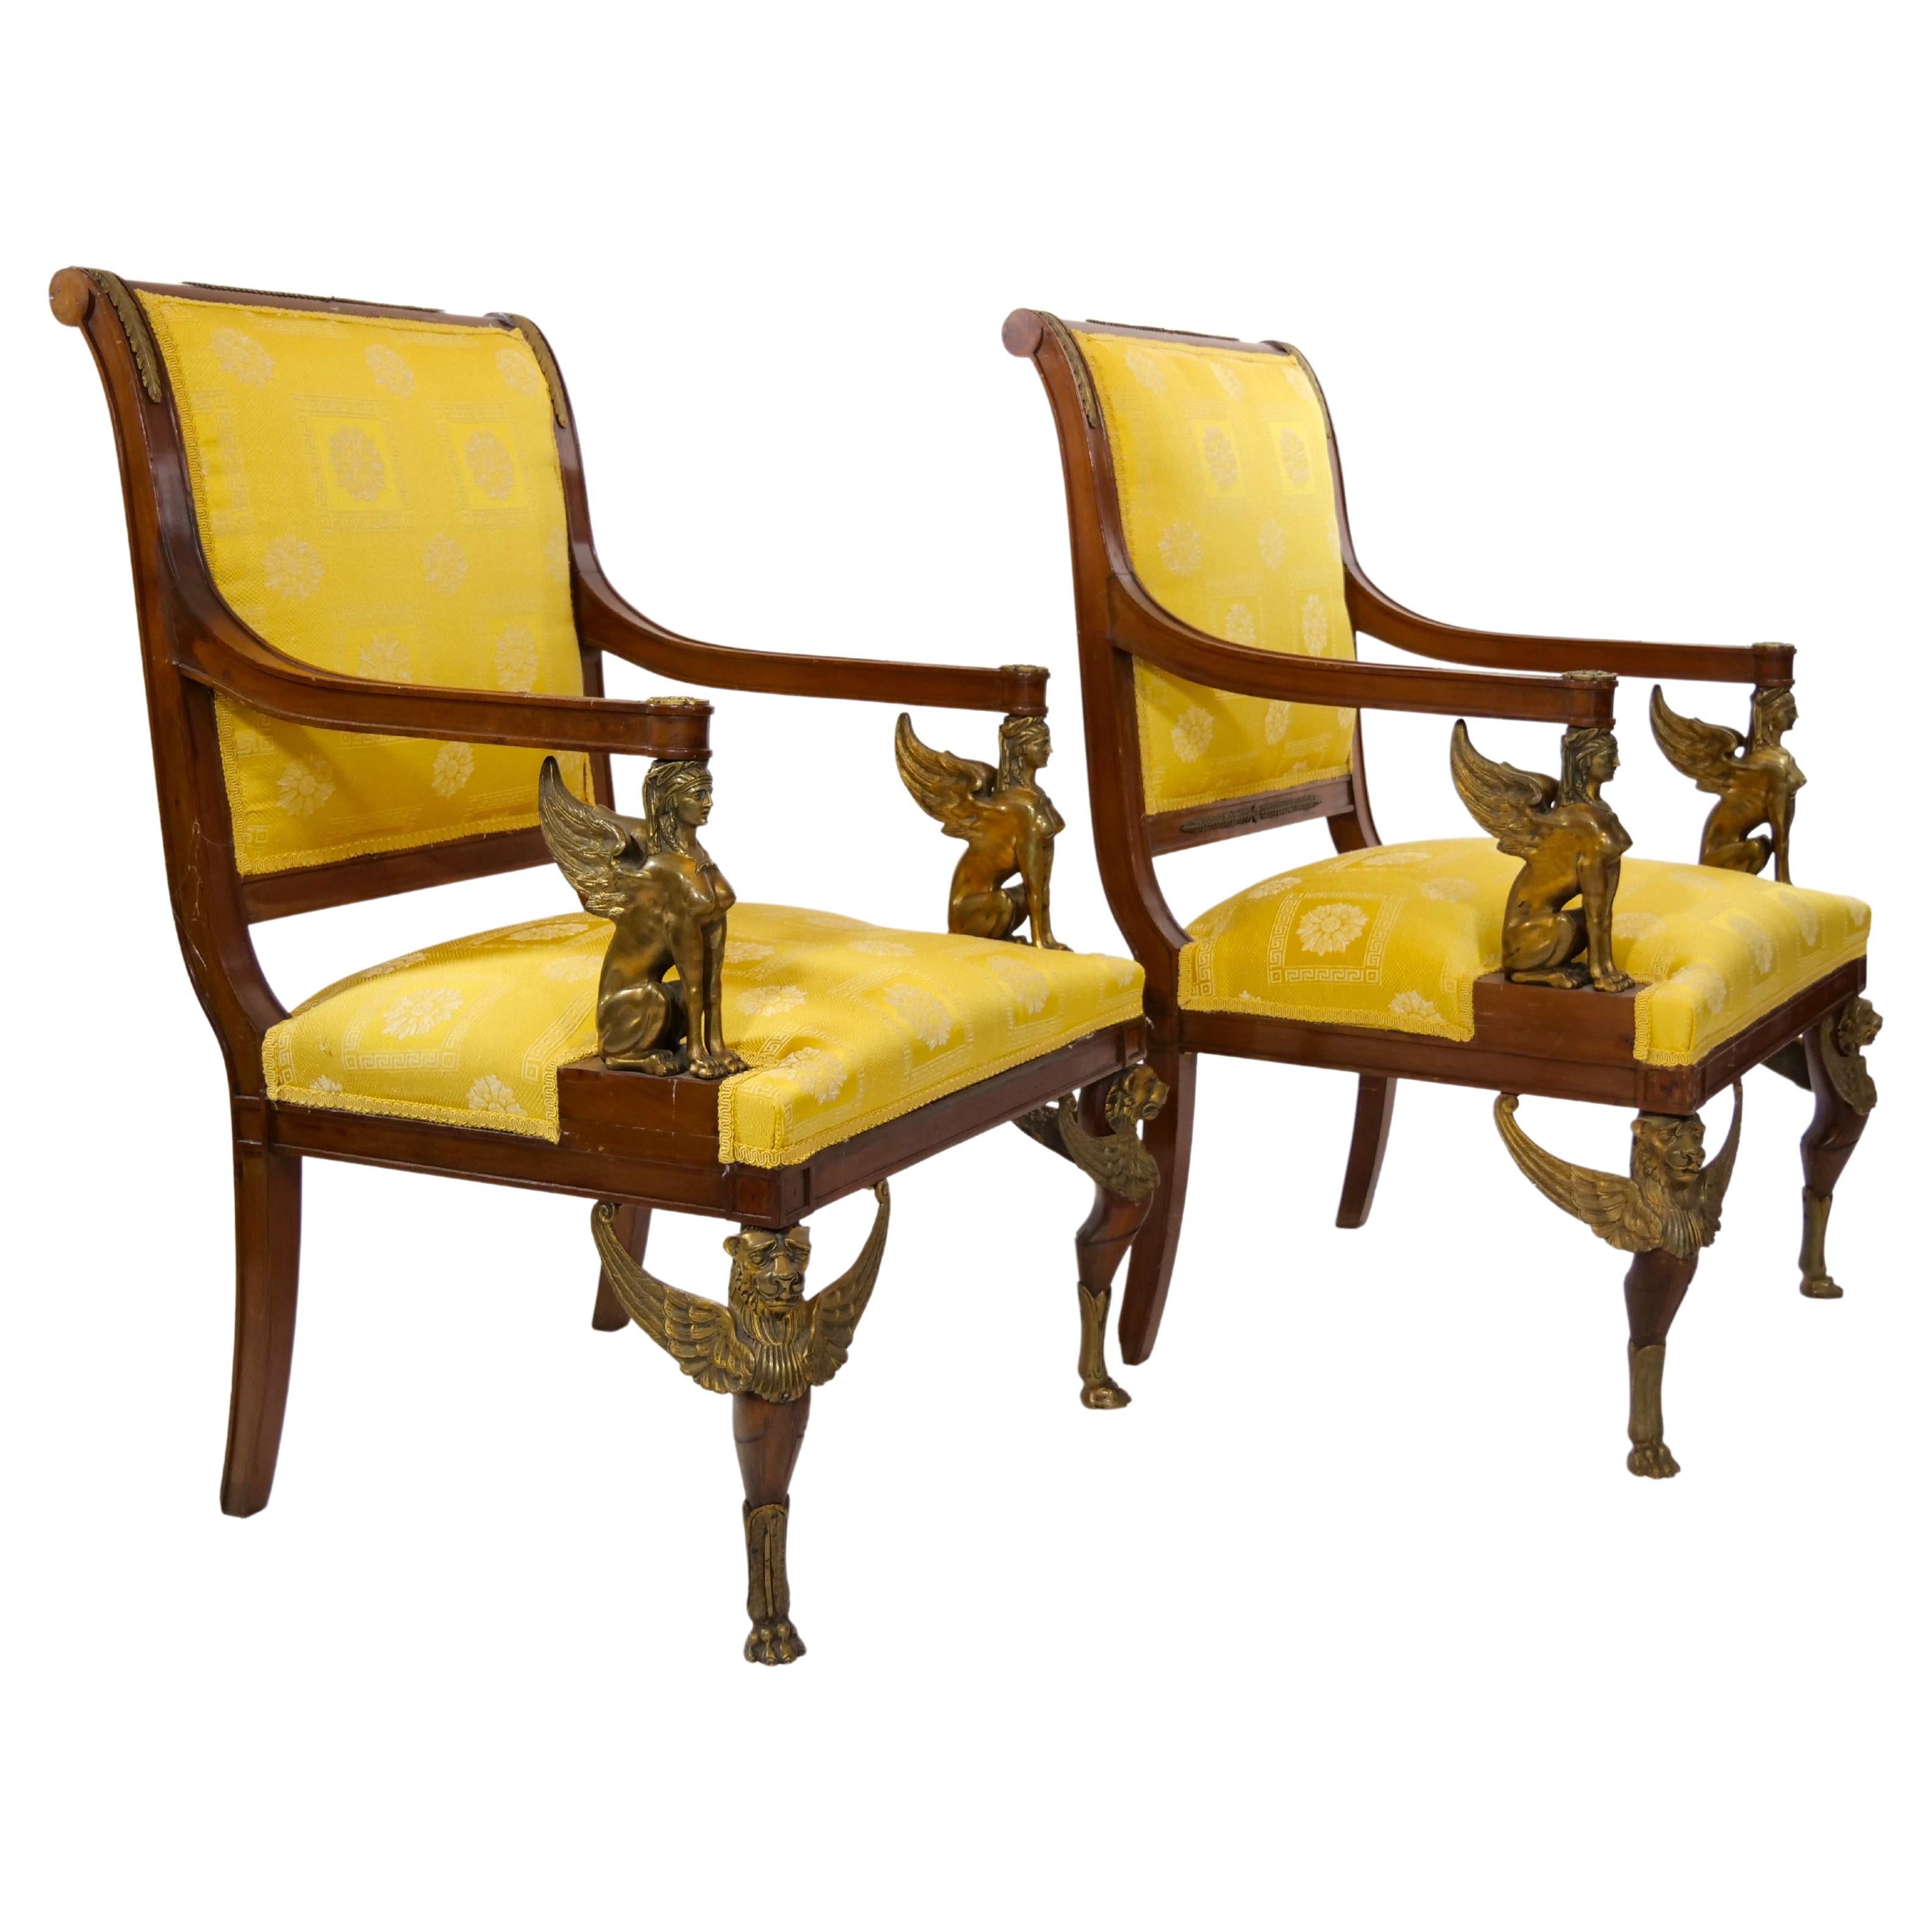 19. Jahrhundert Französisch Empire-Stil handgefertigte vergoldete Bronze Mahagoni gerahmt gepolstert Paar Sessel. Jeder Sessel steht auf vier geraden Mahagonibeinen, von denen die beiden vorderen auf vergoldeten Bronzefüßen ruhen. Sphinxen aus